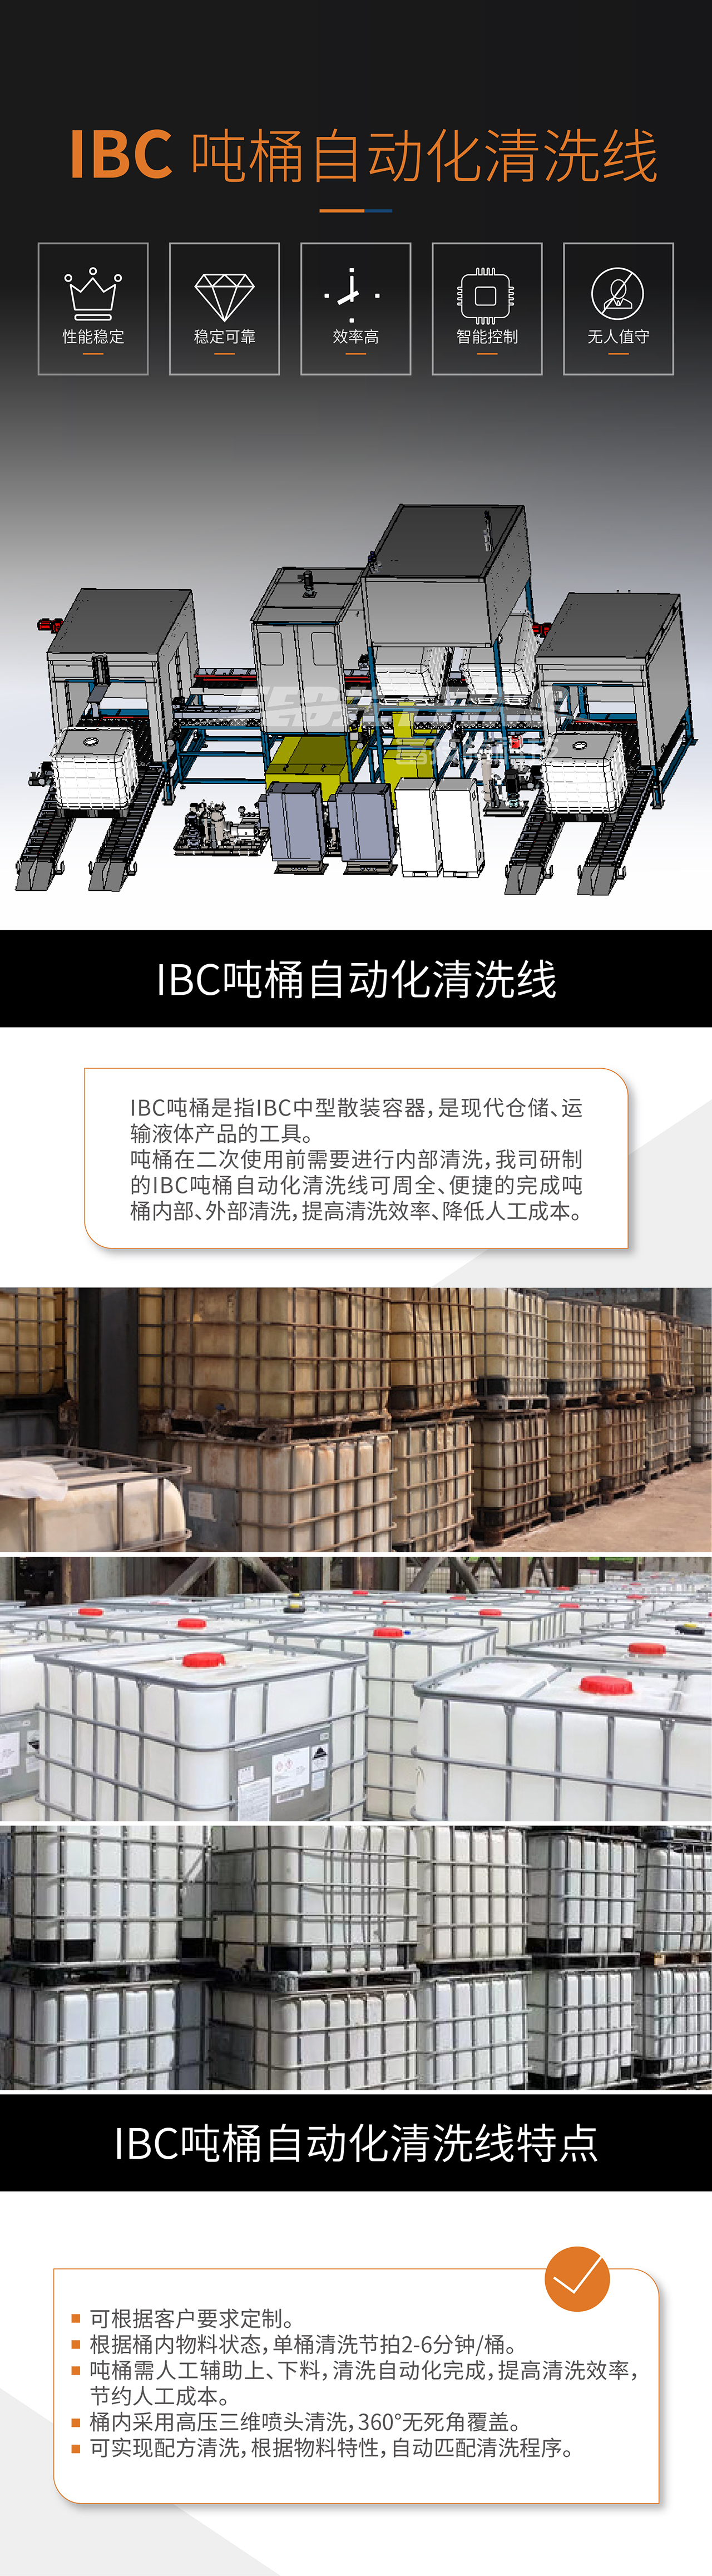 IBC吨桶清洗线-01.jpg